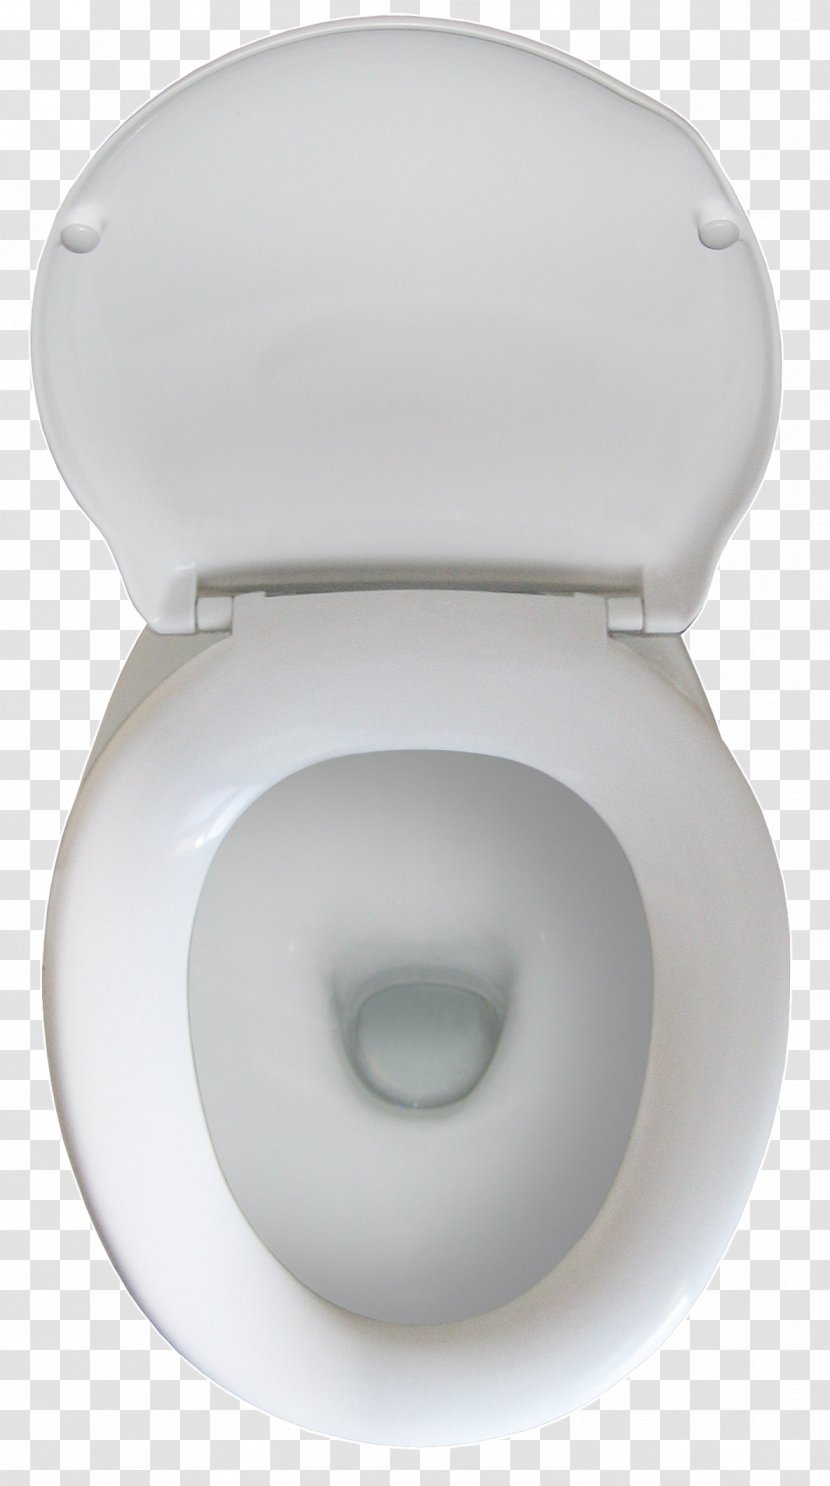 Toilet & Bidet Seats Flush Bathroom Bowl - Closet Transparent PNG